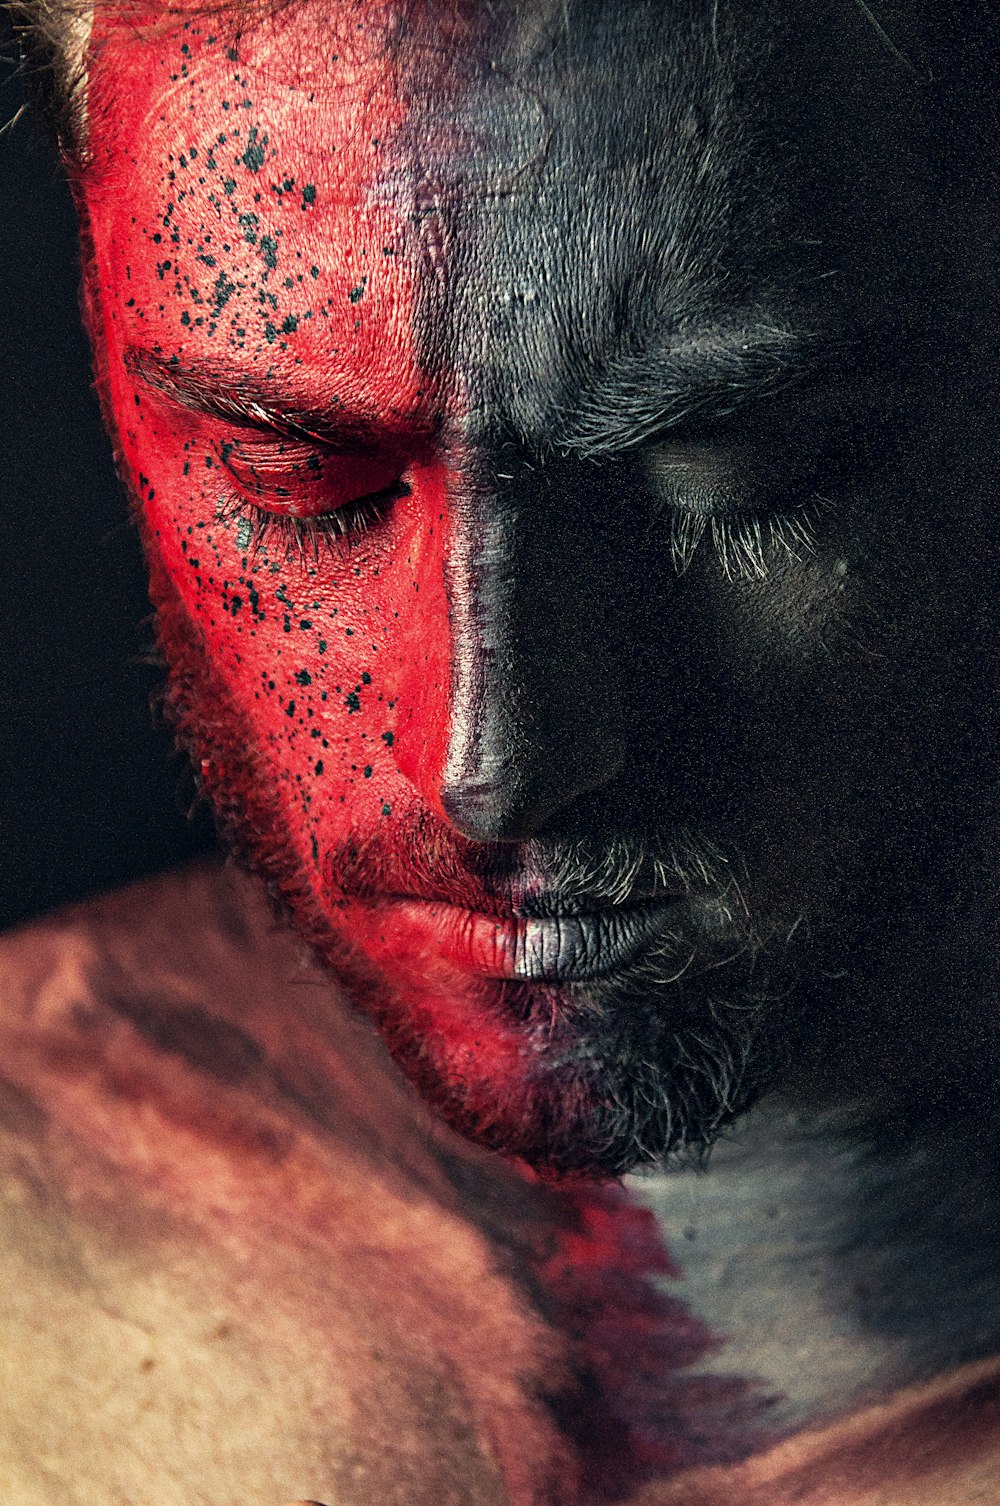 Ritratto dell'uomo vernice rossa e nera